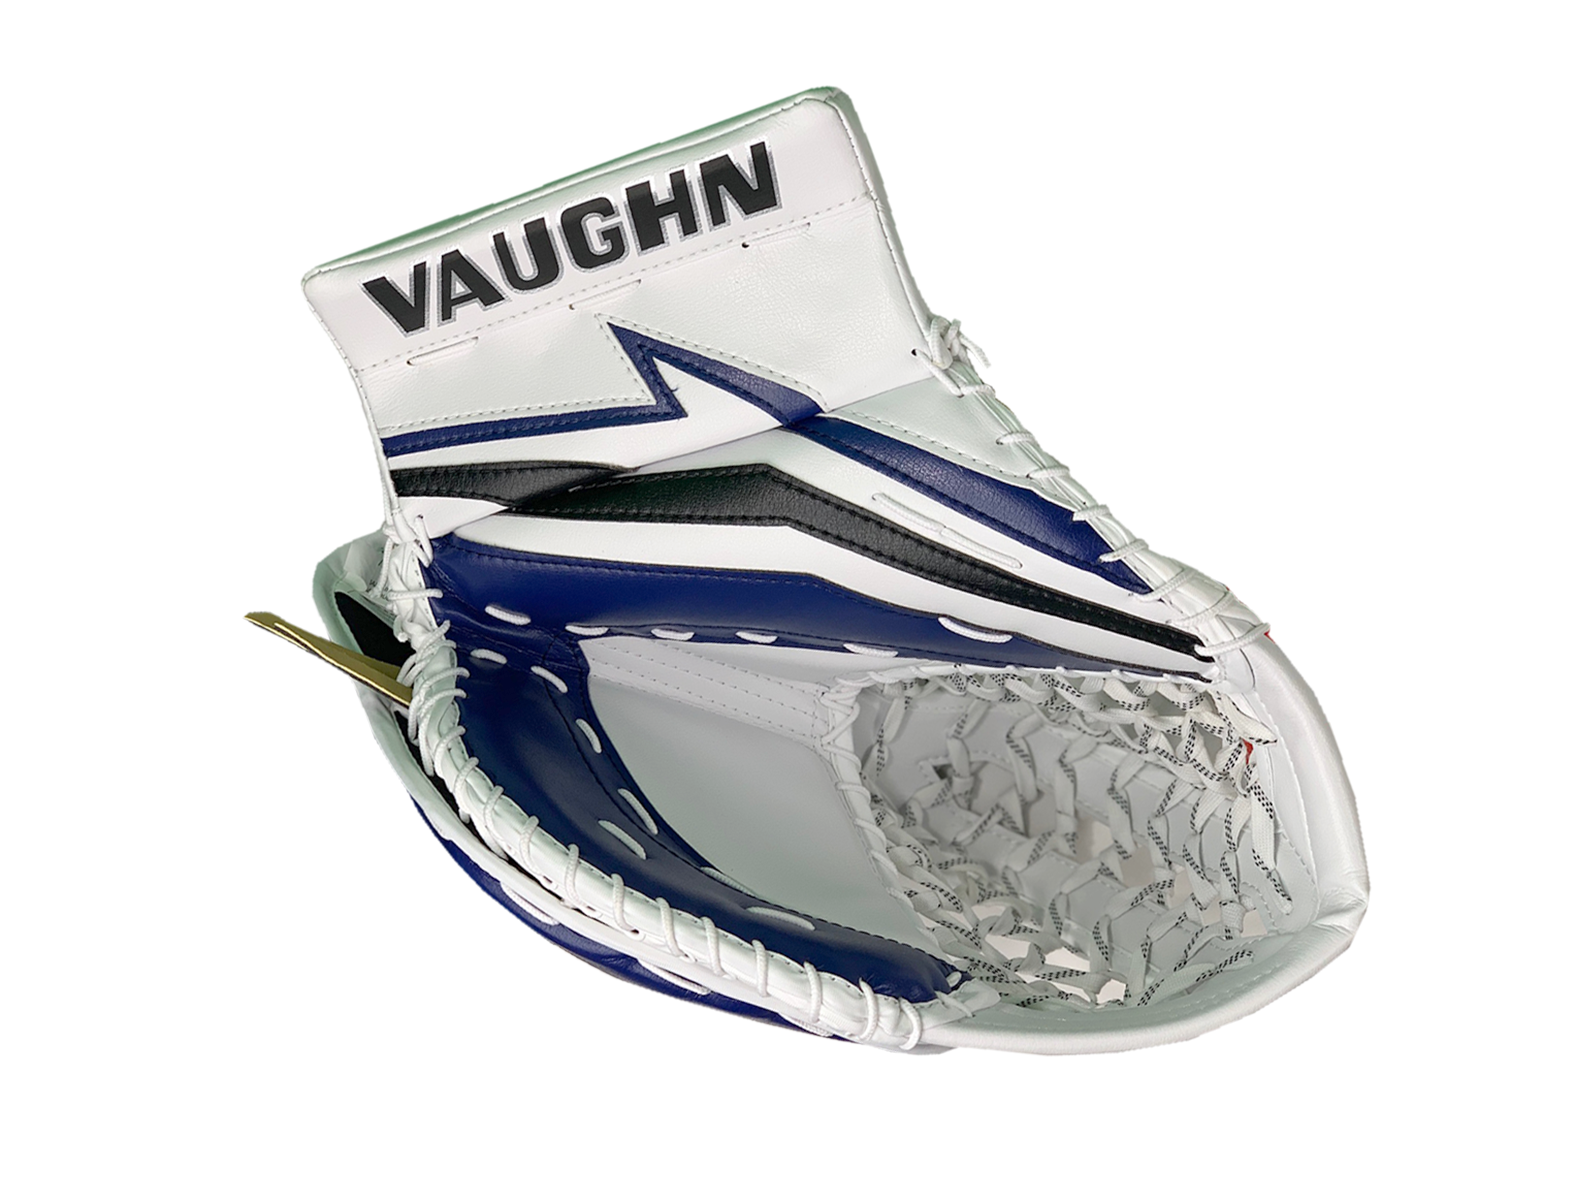 Vaughn SLR/V9 Pro Stock Goalie Glove & Blocker Regular Kucharski